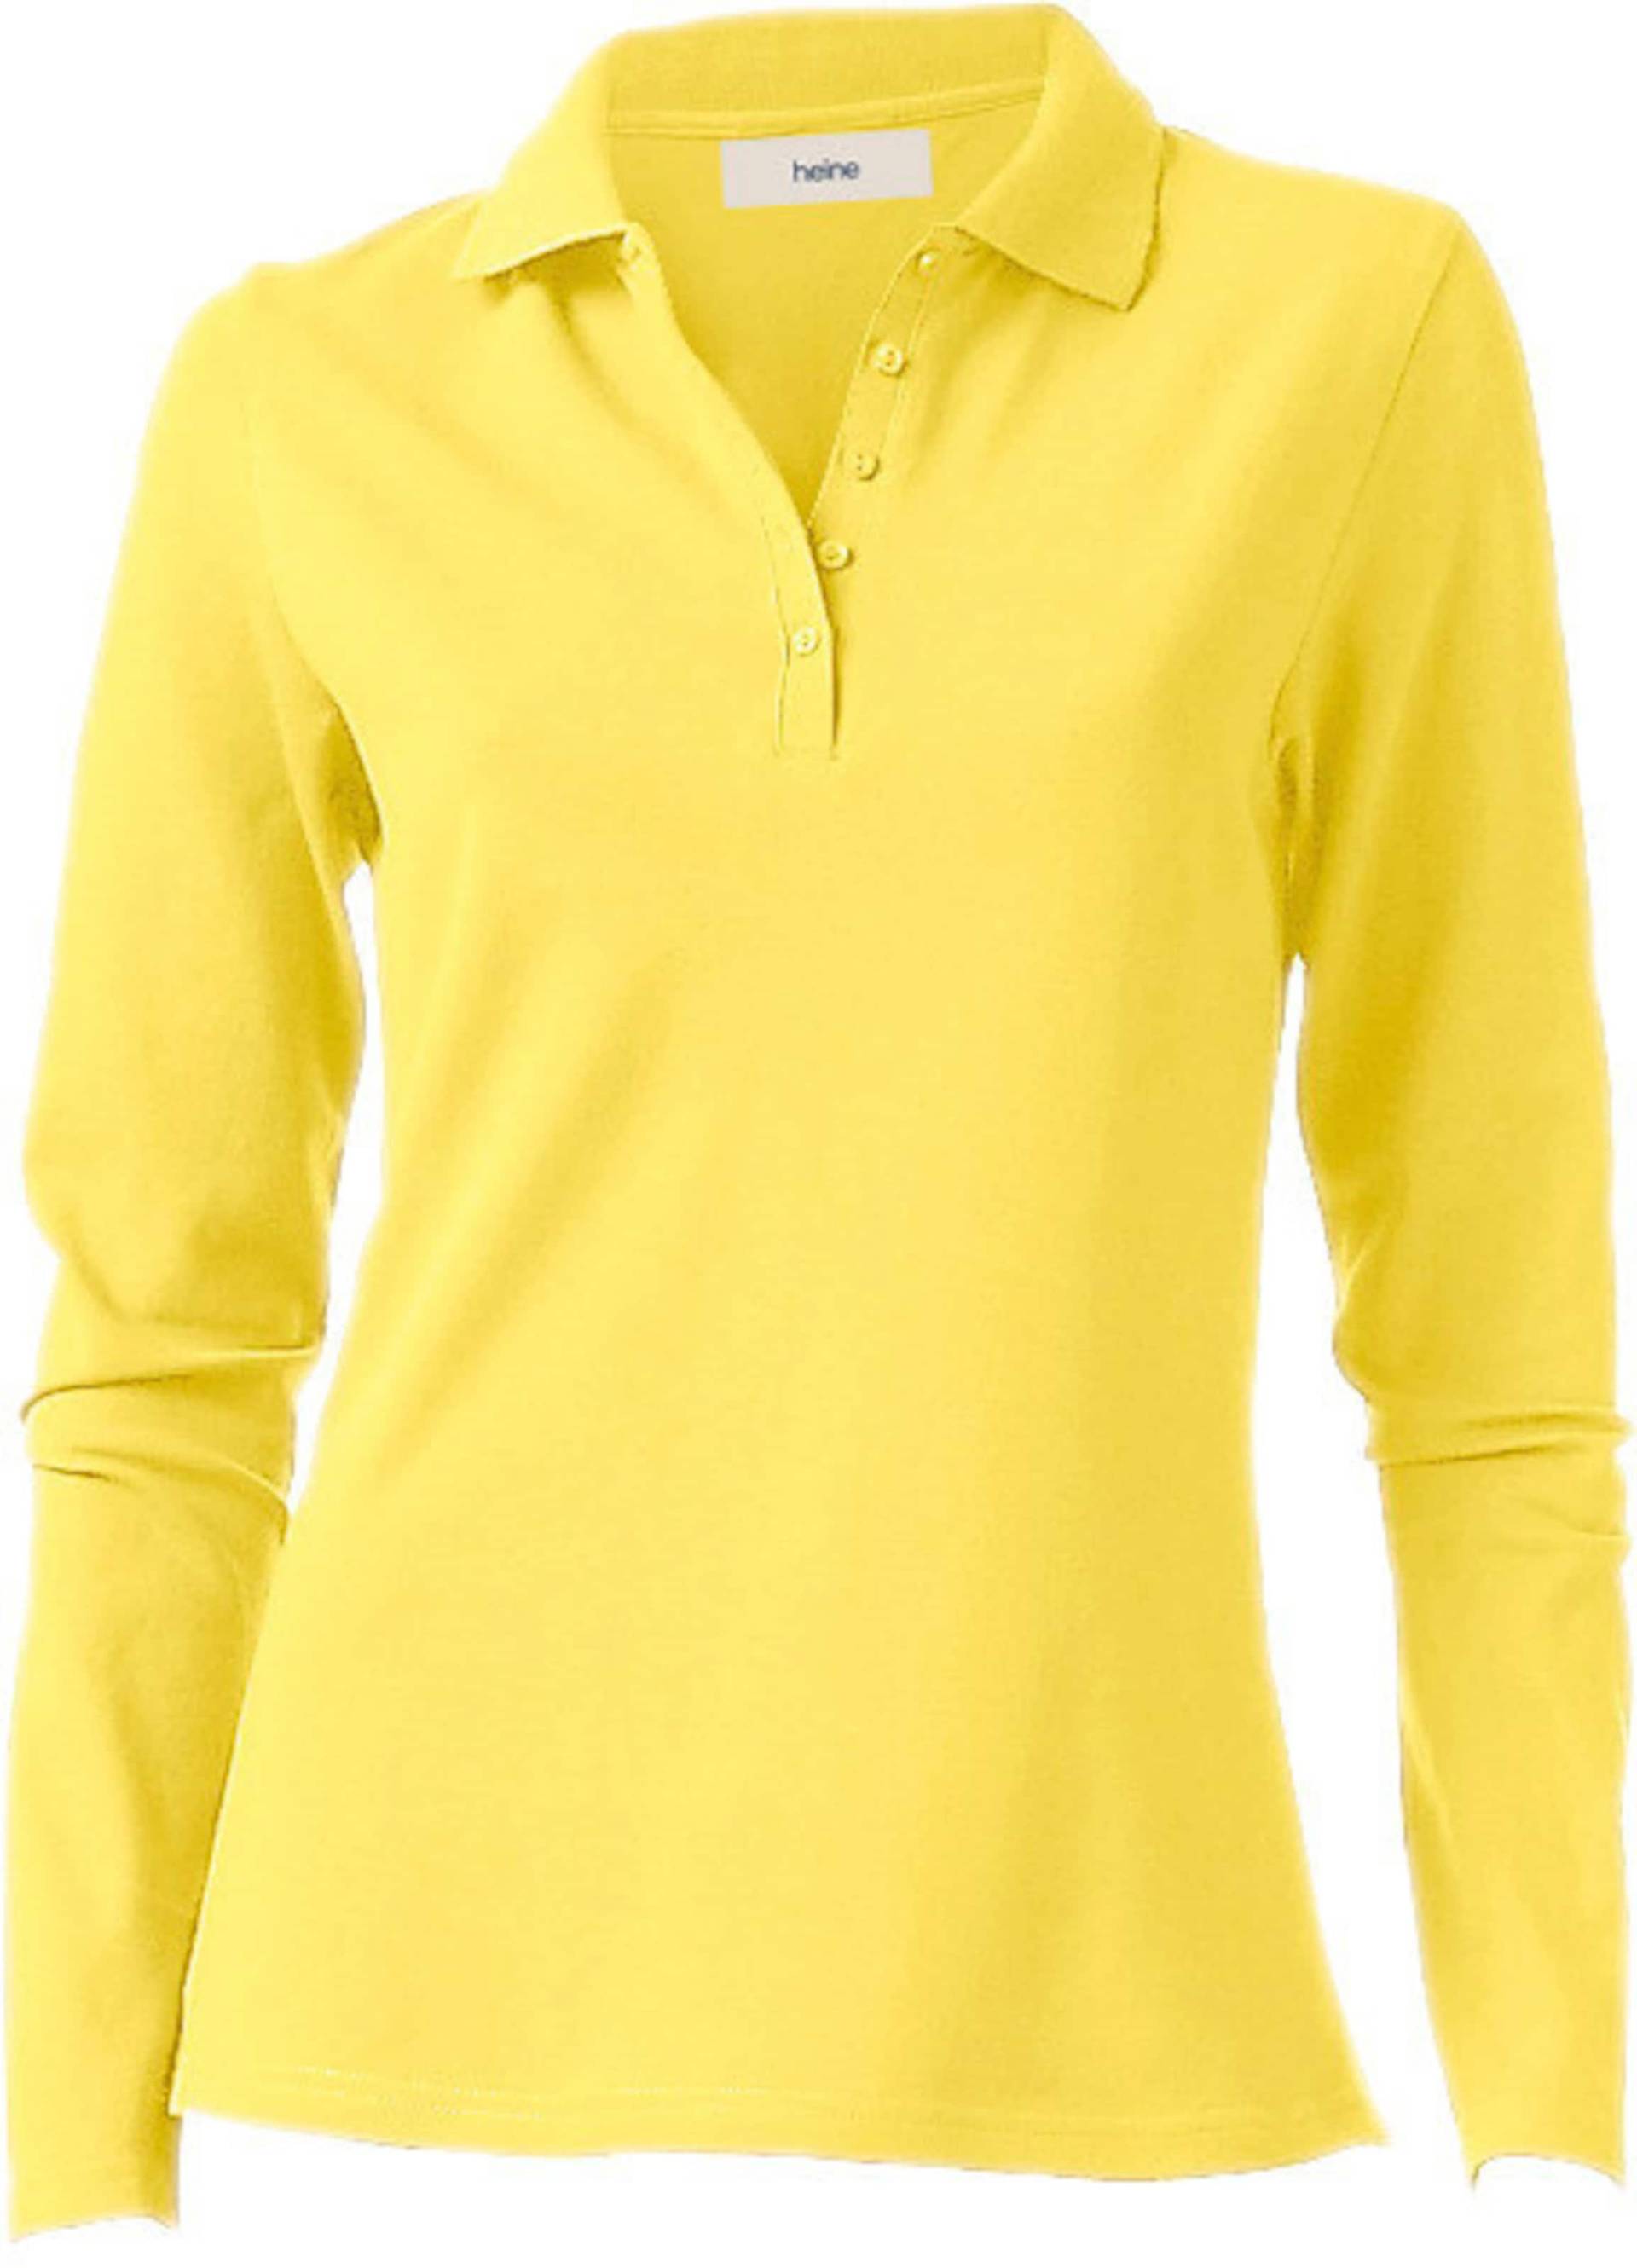 Poloshirt in gelb von heine